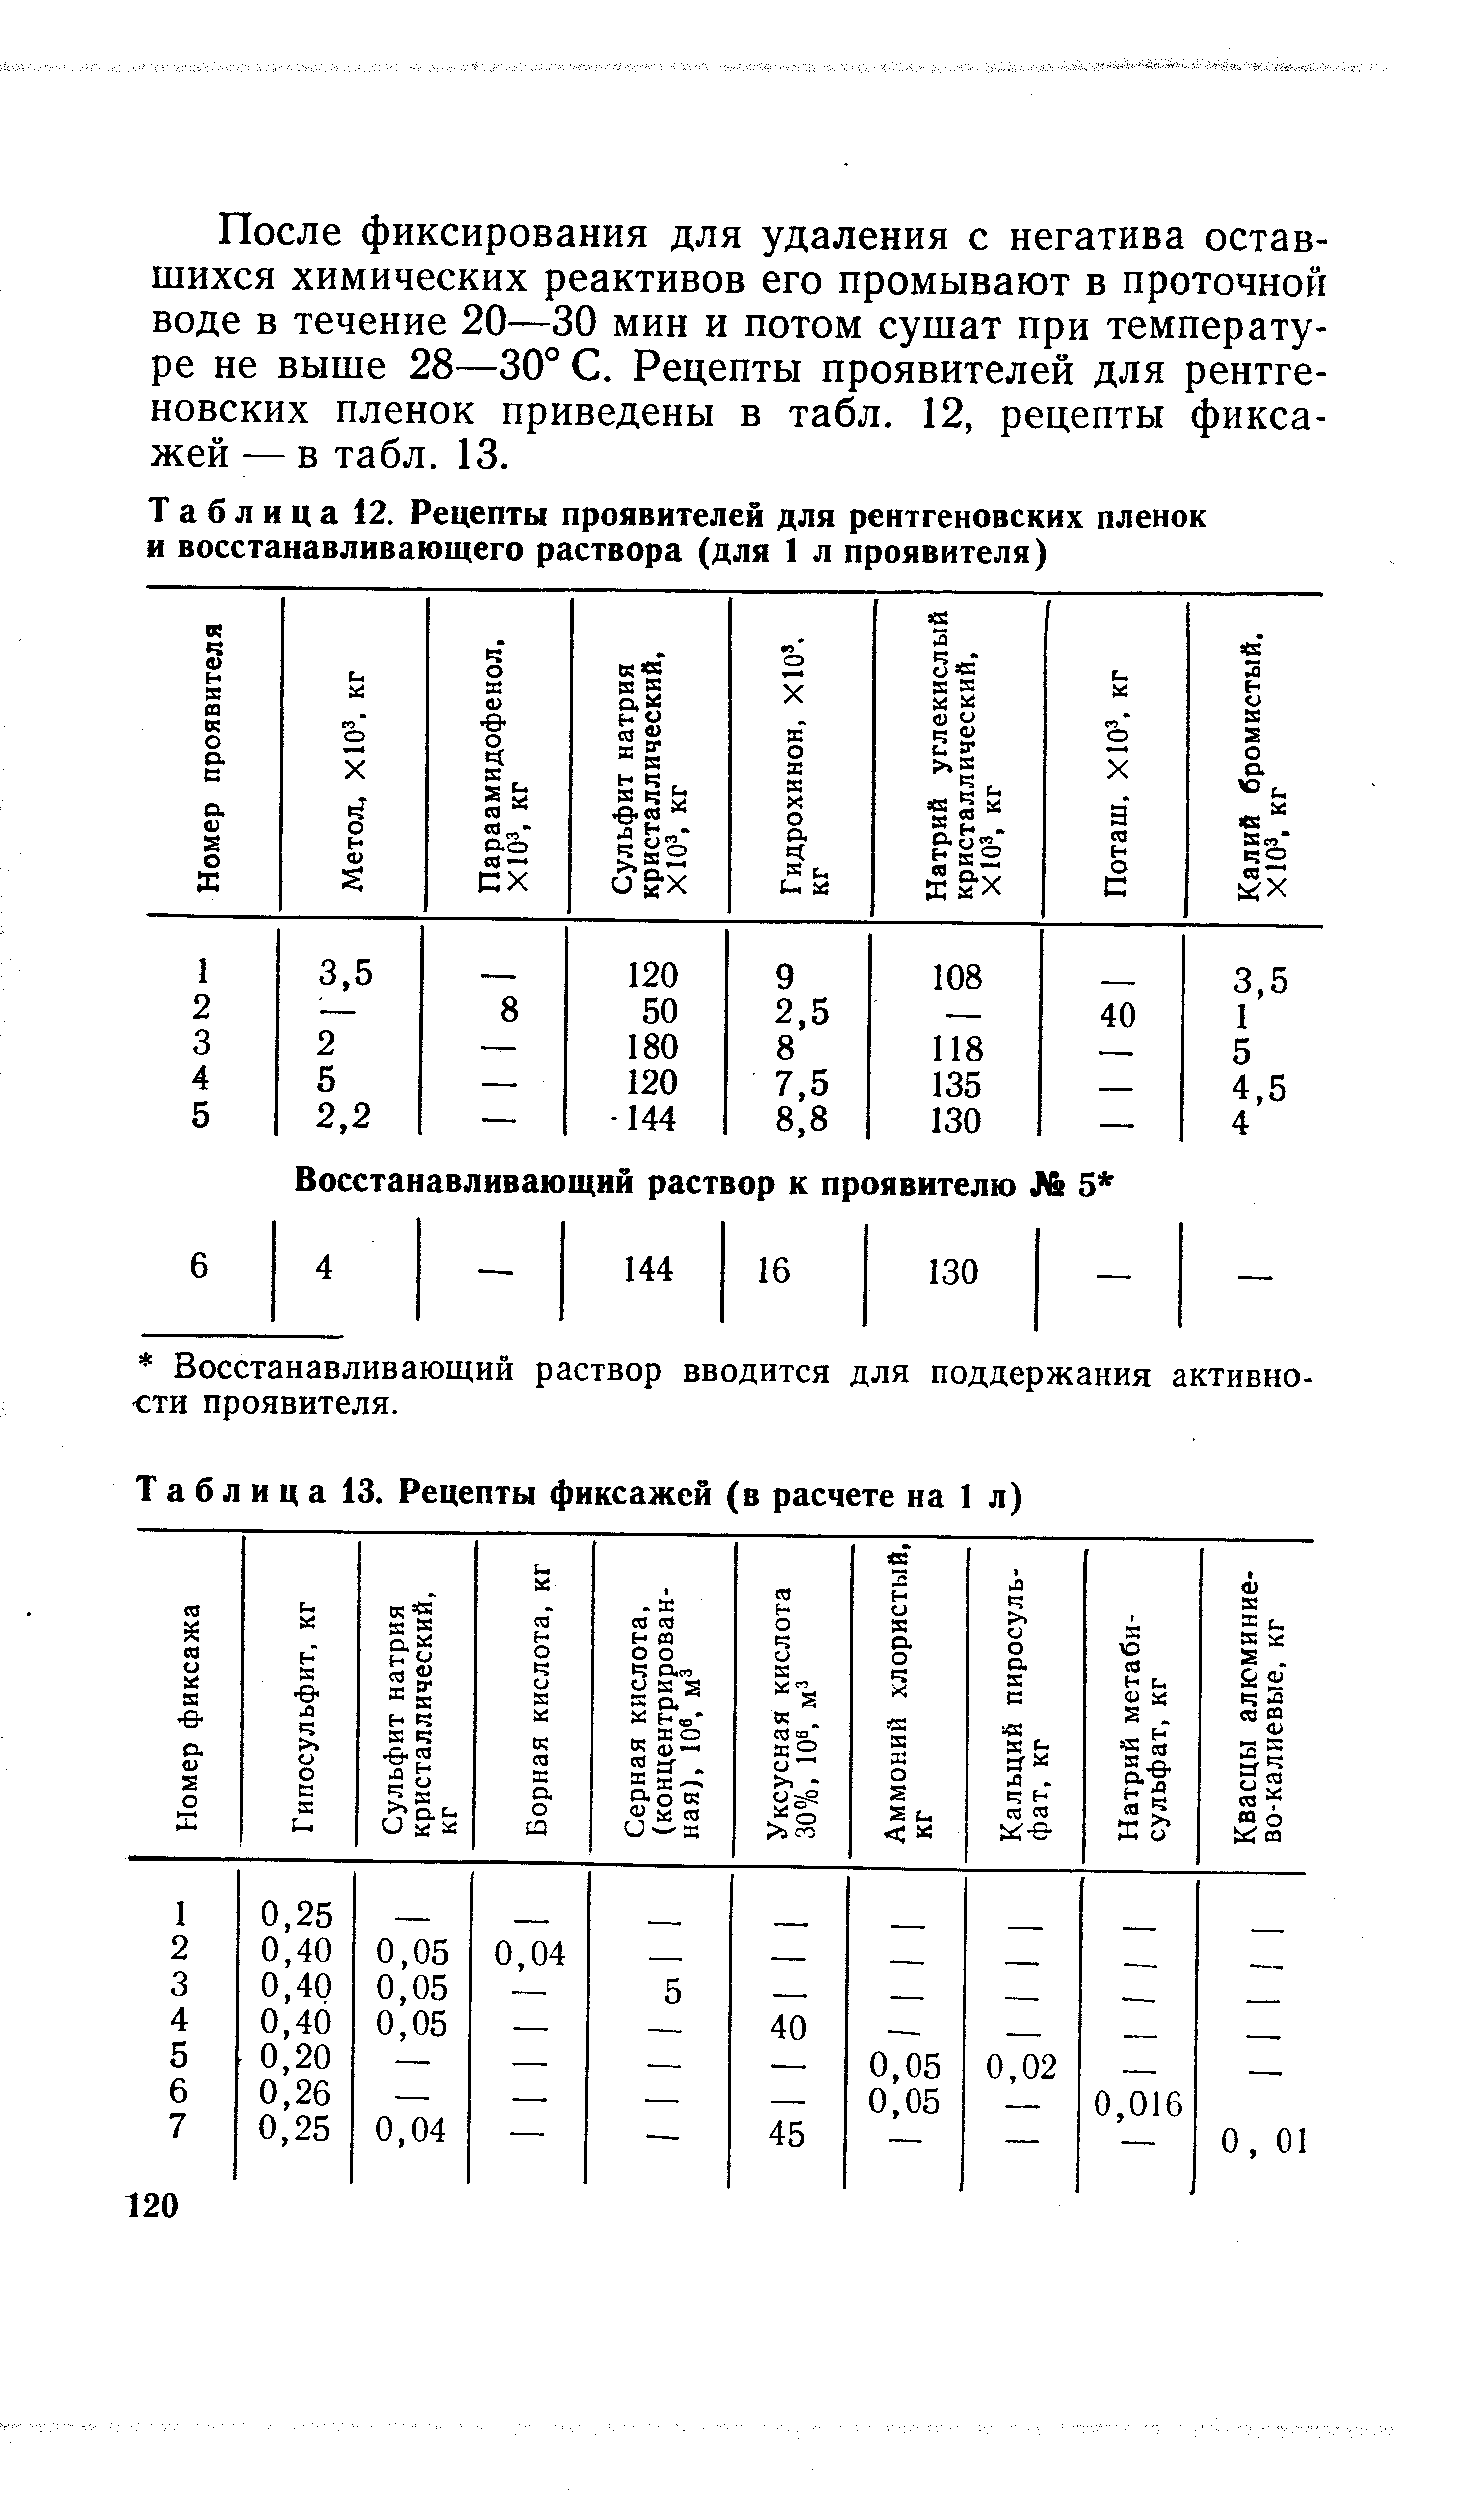 Таблица 12. Рецепты проявителей для <a href="/info/4303">рентгеновских пленок</a> и восстанавливающего раствора (для 1 л проявителя)
